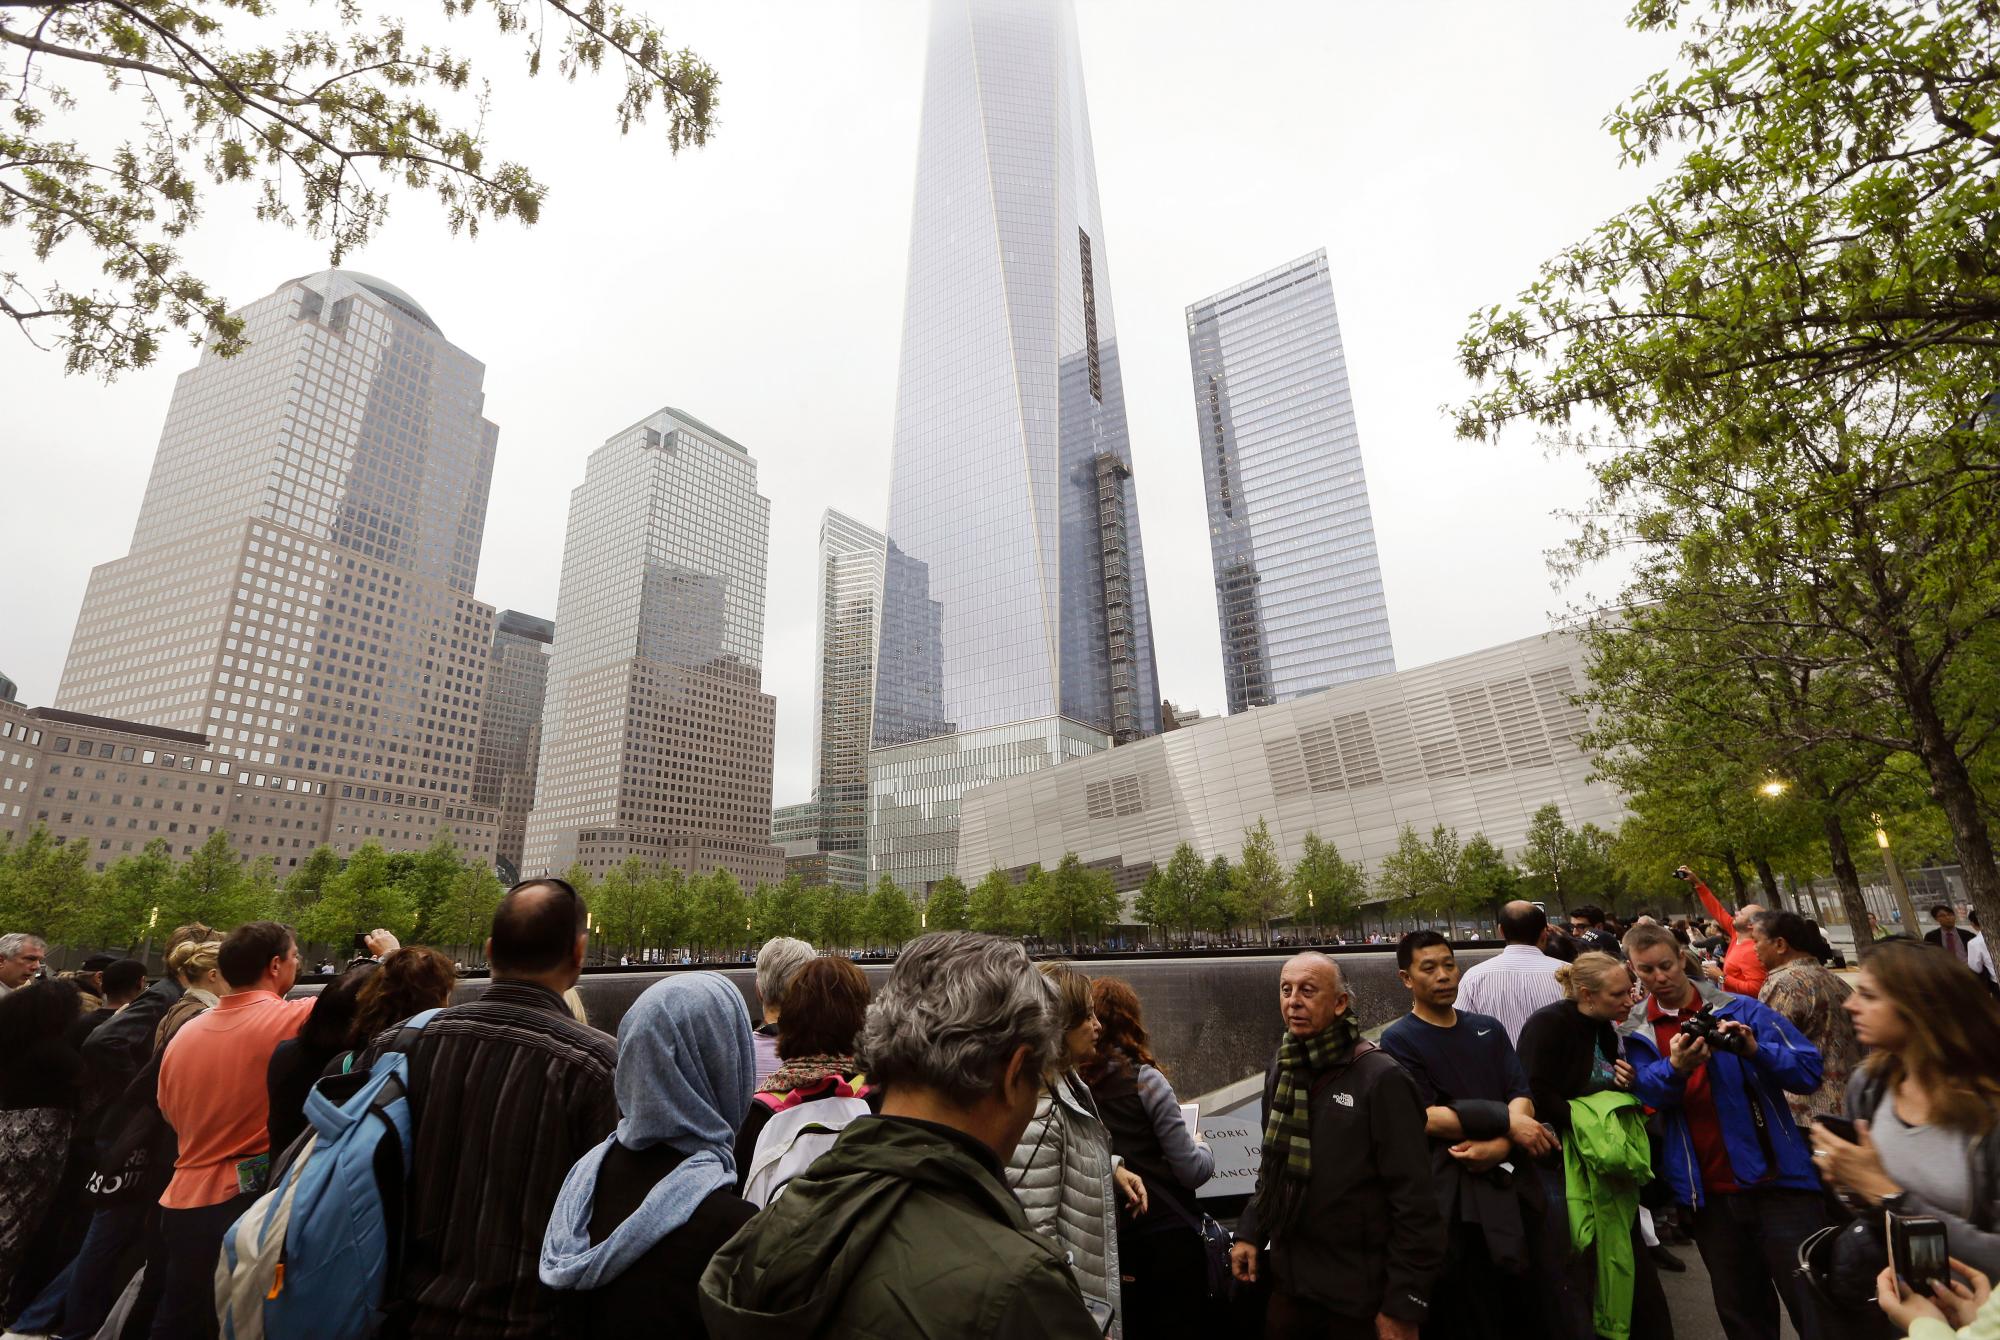 ARCHIVO: en esta foto de archivo del 15 de mayo de 2015, los visitantes se reúnen cerca de las piscinas en el 9/11 Memorial en Nueva York. Como lo han hecho 17 veces antes, se espera que una multitud de familiares de víctimas en el sitio el miércoles 11 de septiembre de 2019 observe el aniversario del ataque terrorista más mortal en suelo estadounidense. 